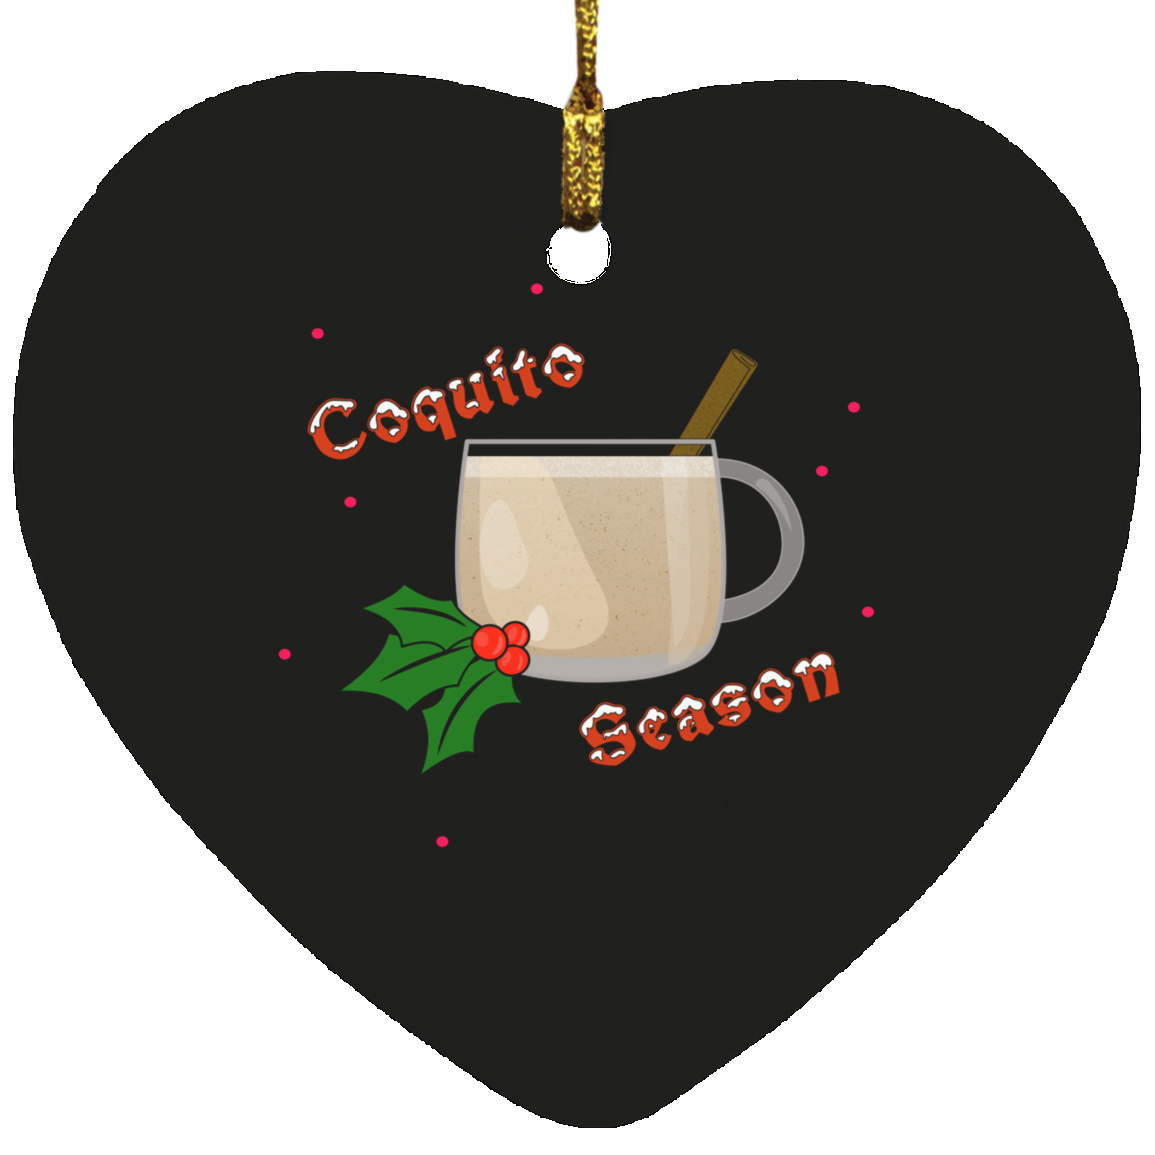 Coquito Season Heart Ornament - Puerto Rican Pride